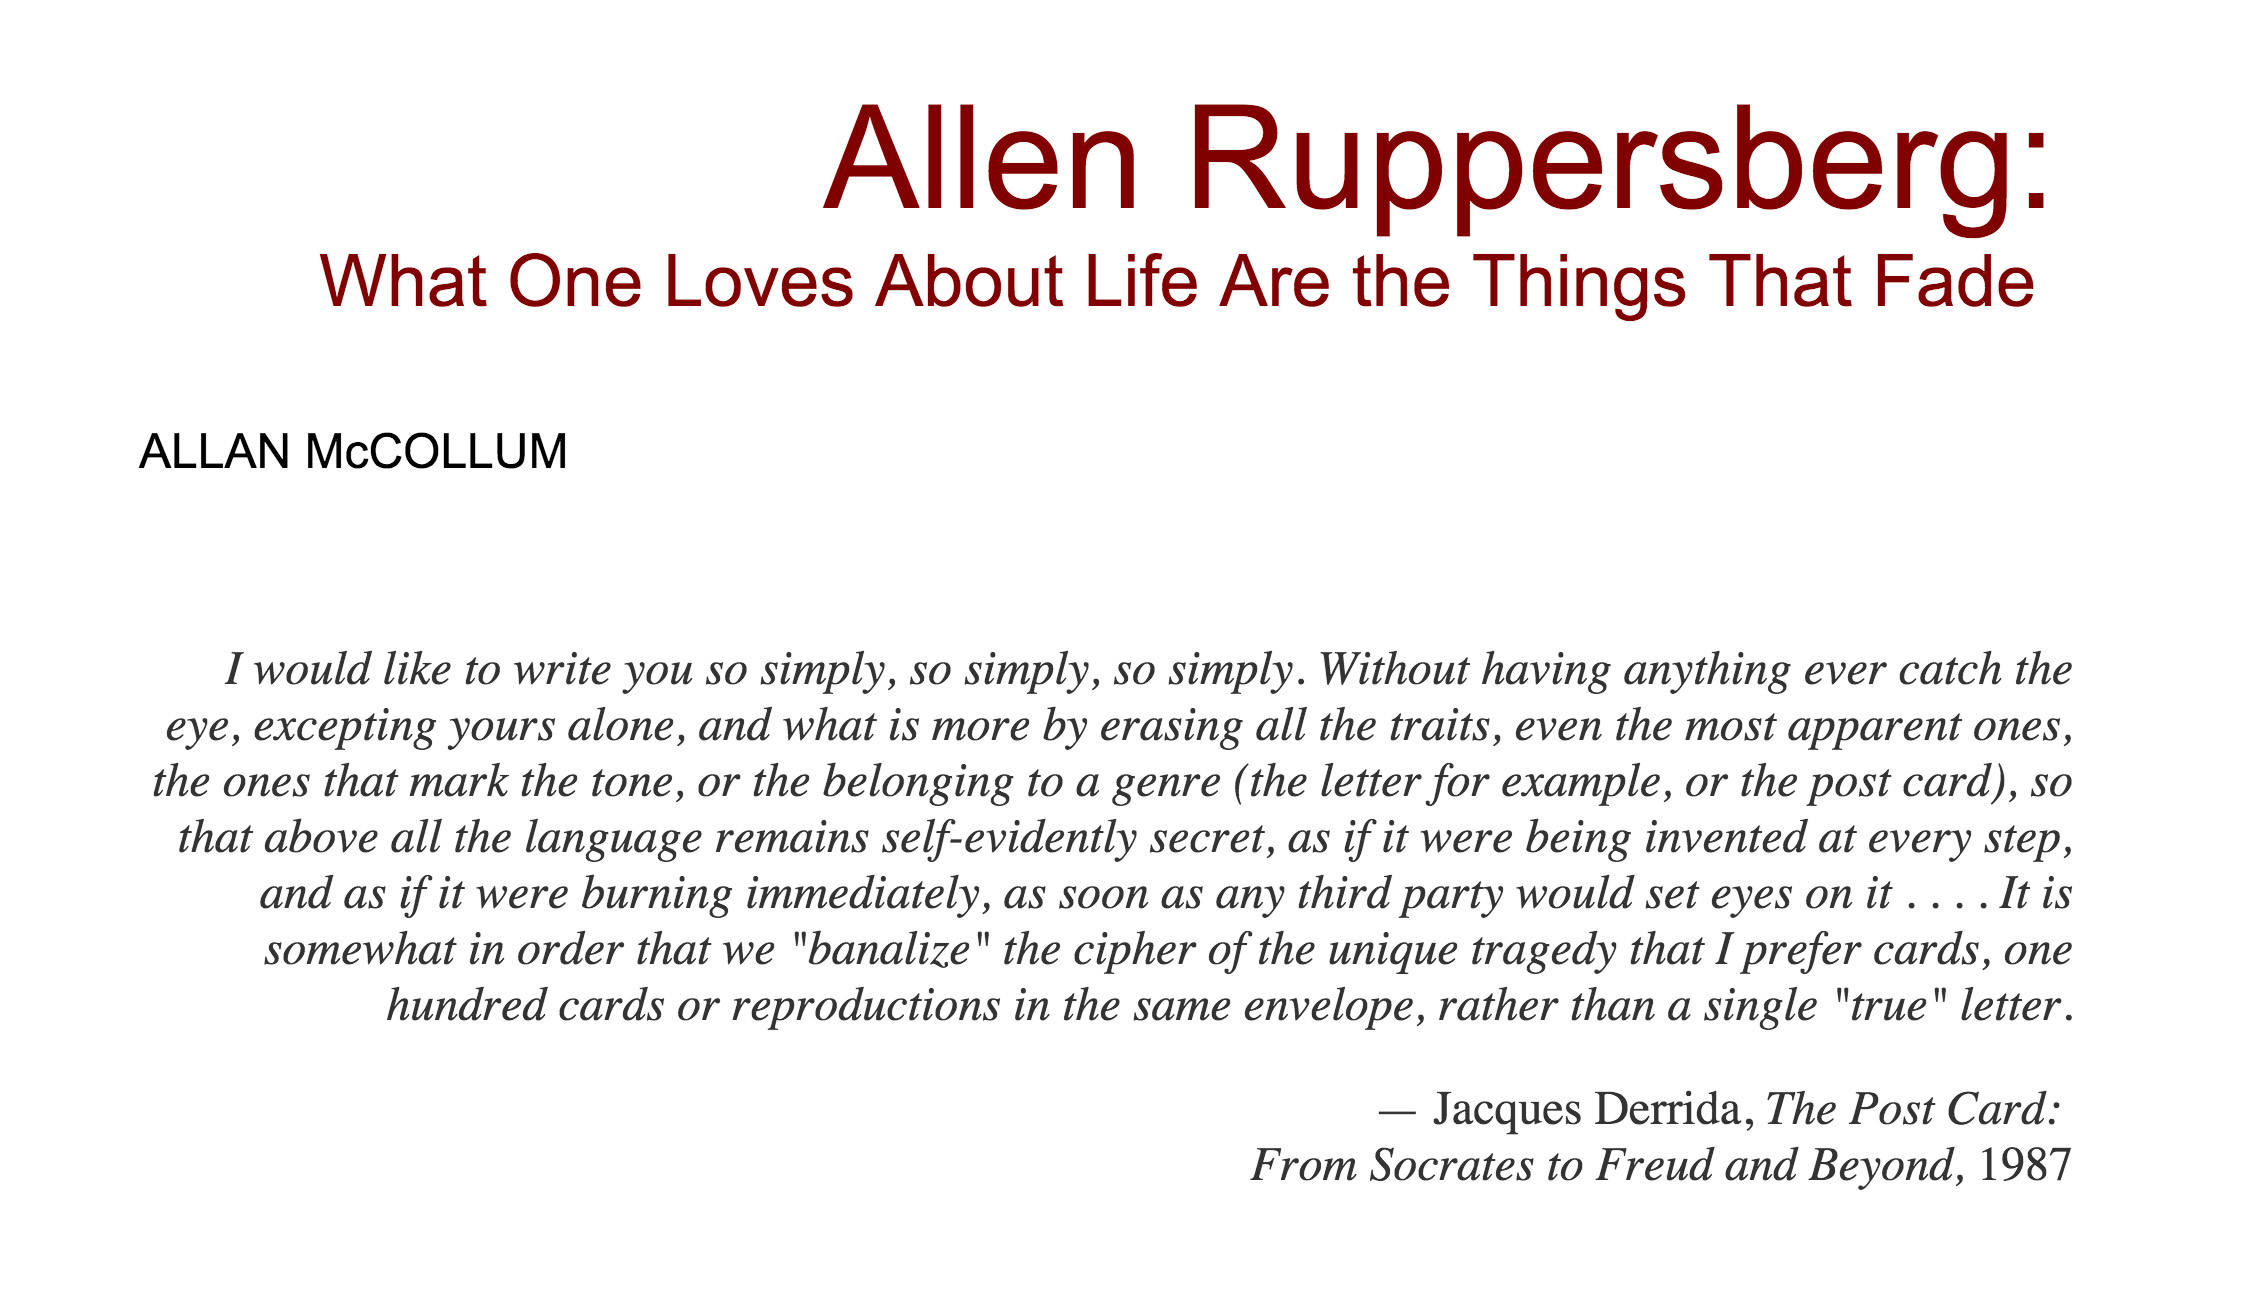 Allen Ruppersberg